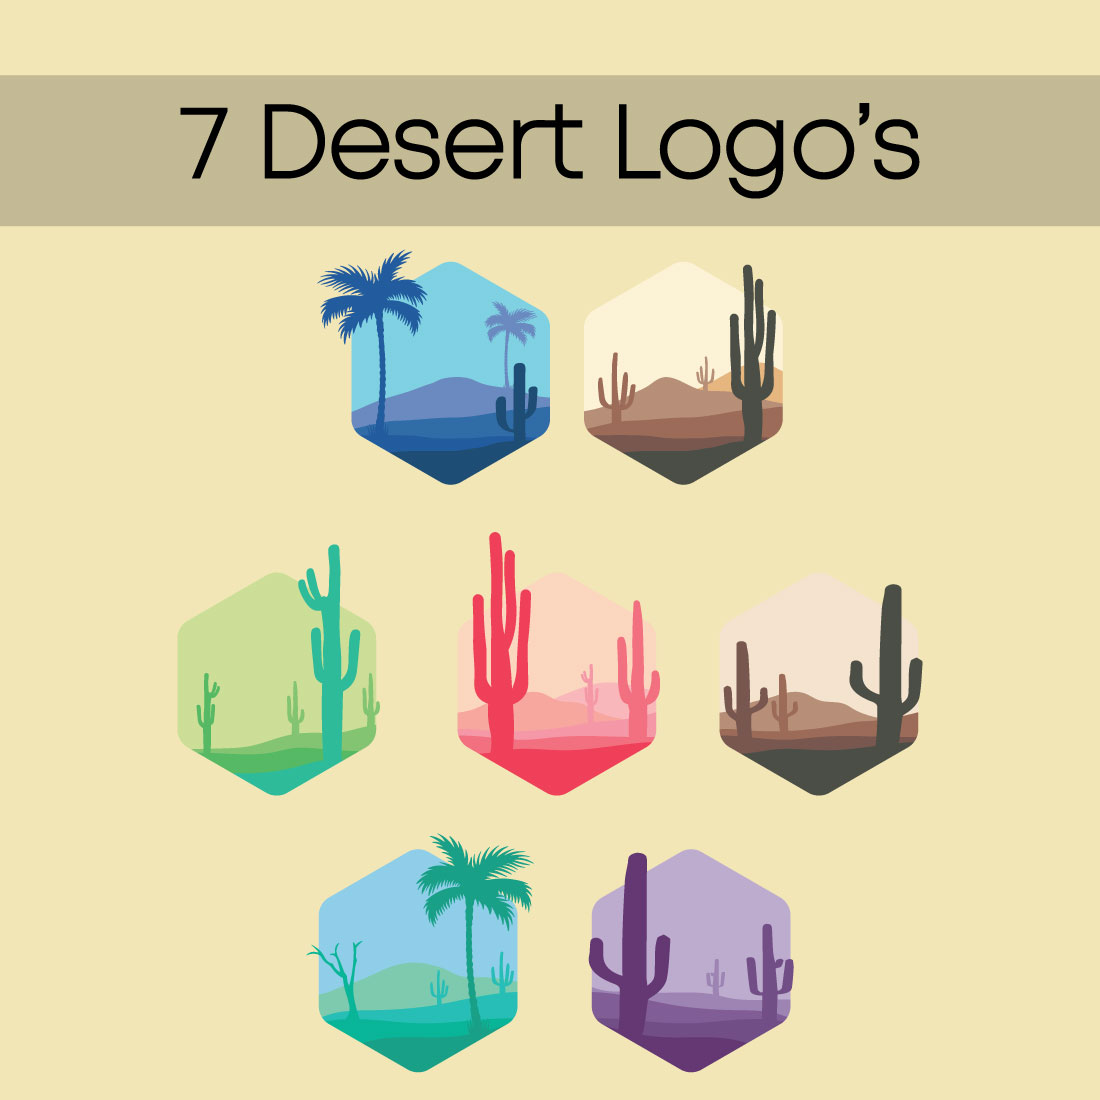 7 Desert Logo's cover image.